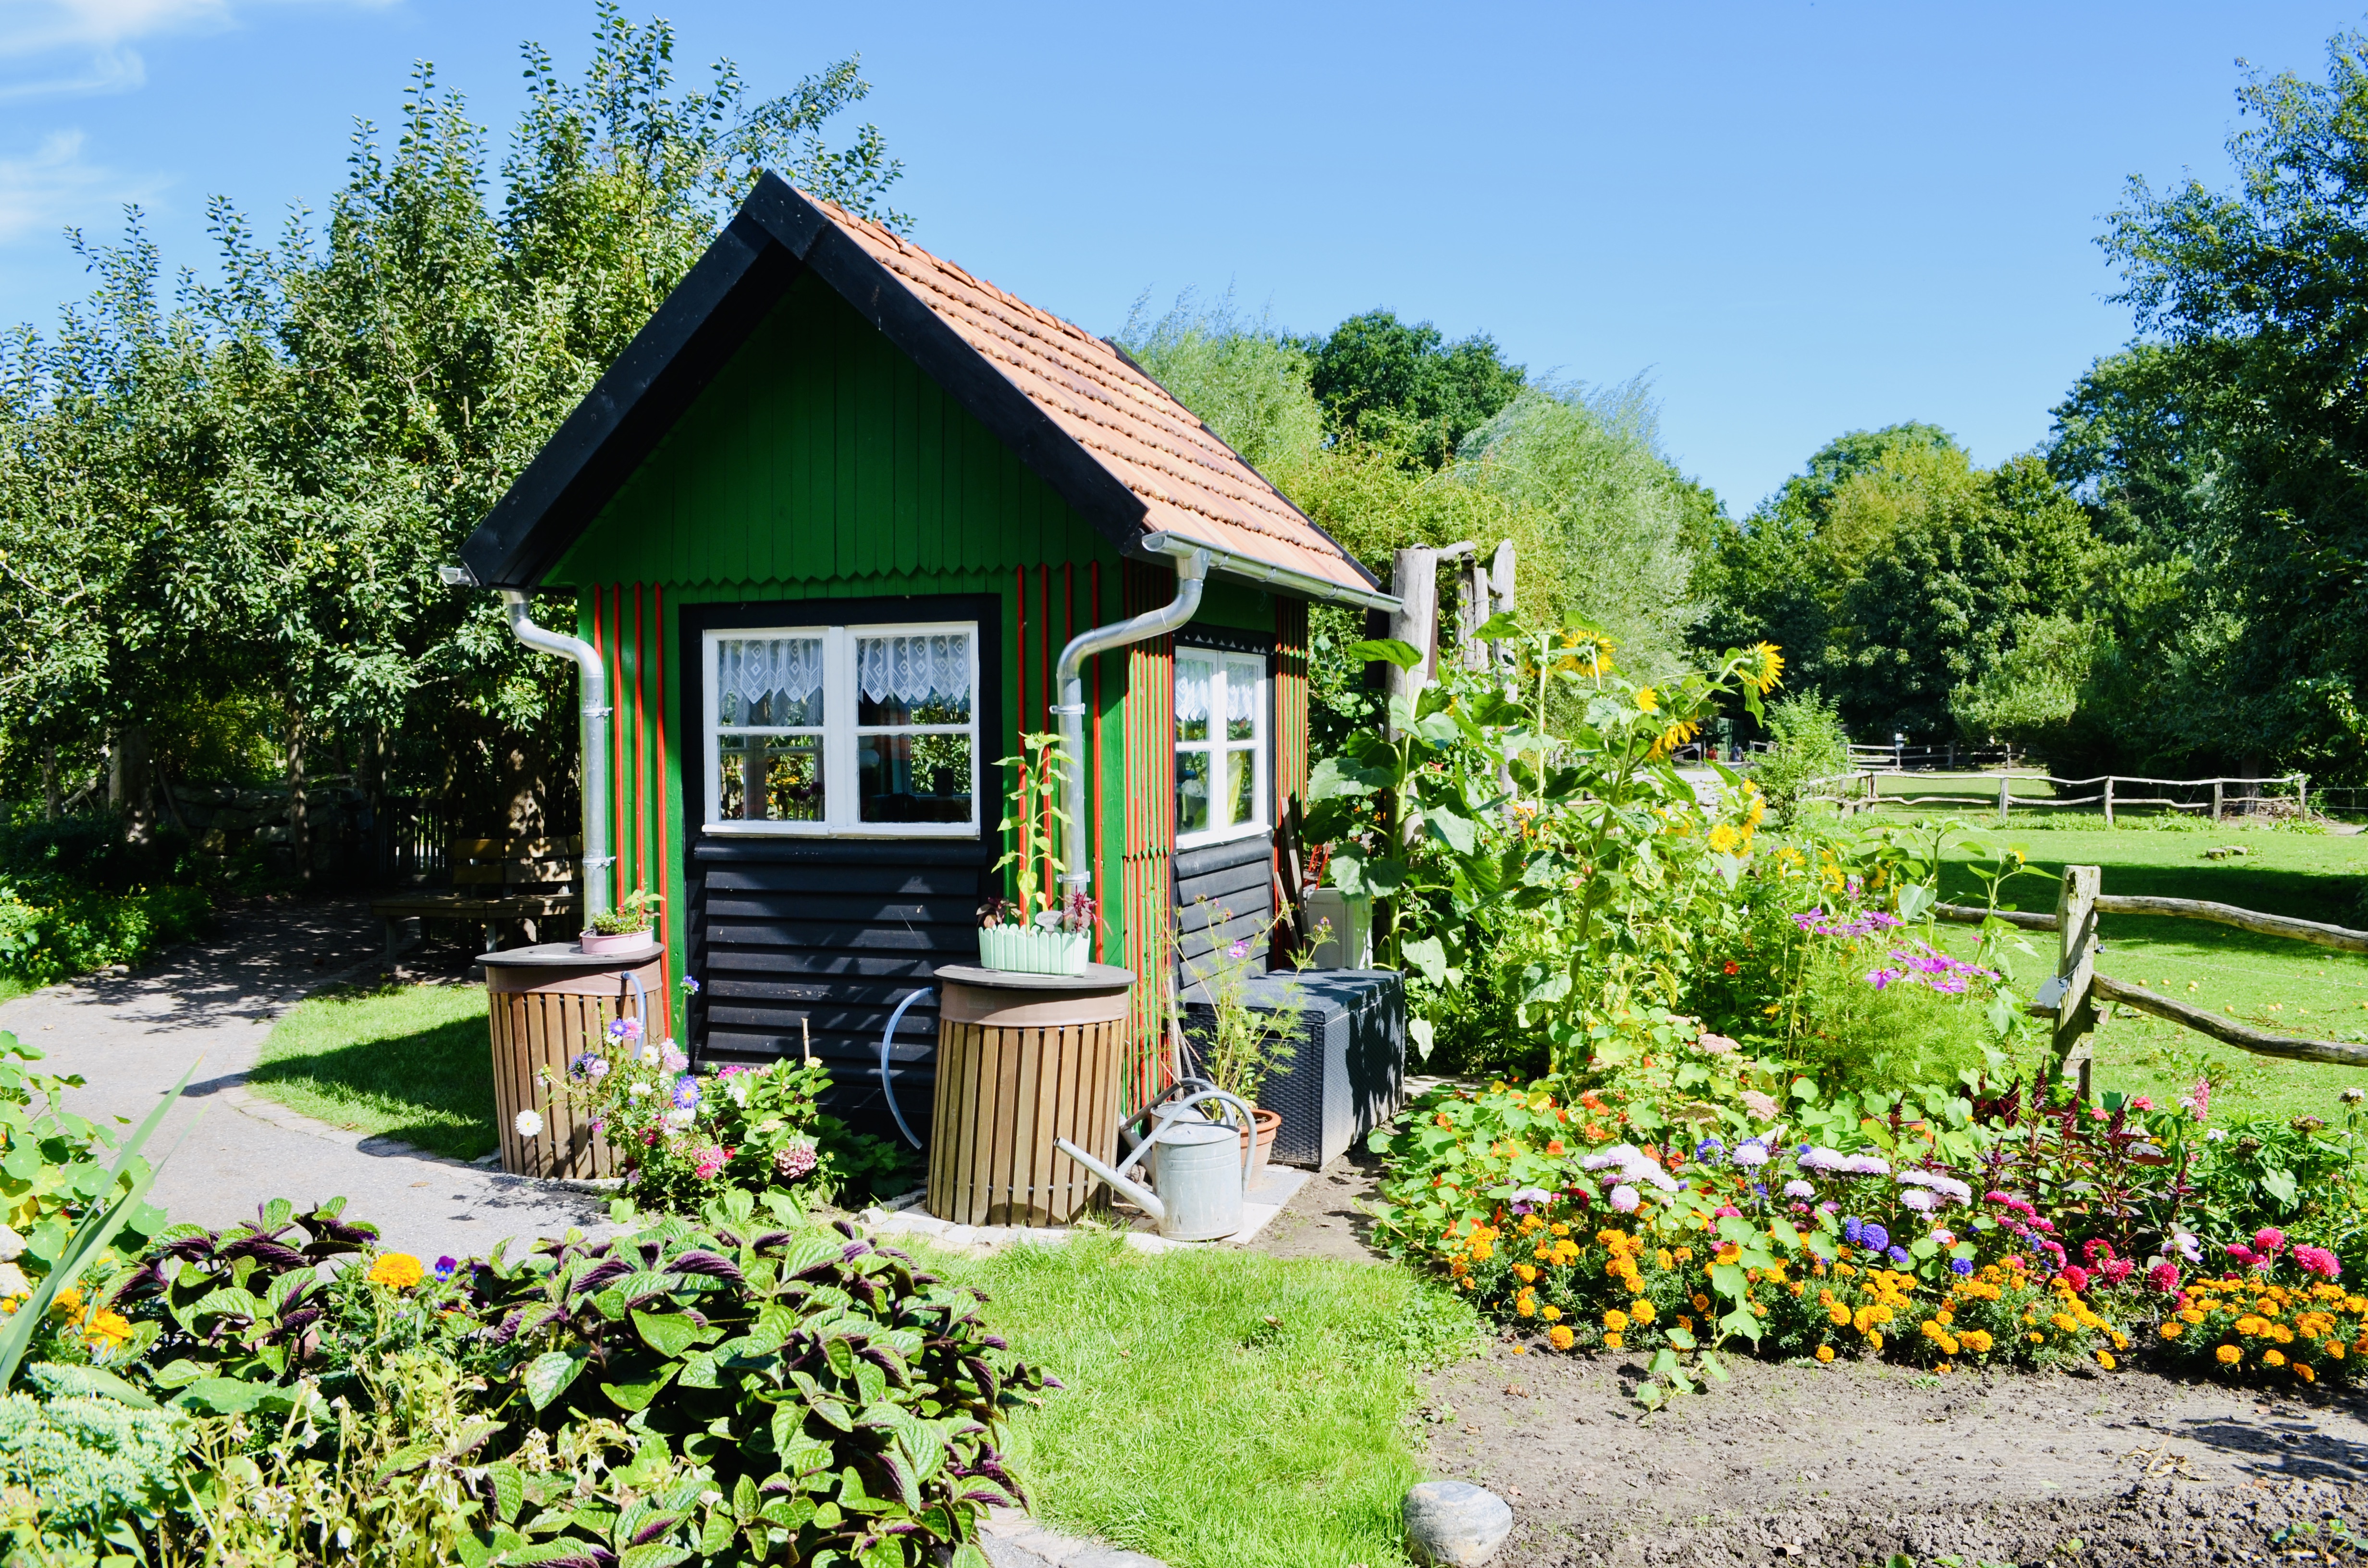 Das kleine grüne Haus im Bauerngarten des Zoos Stralsund.